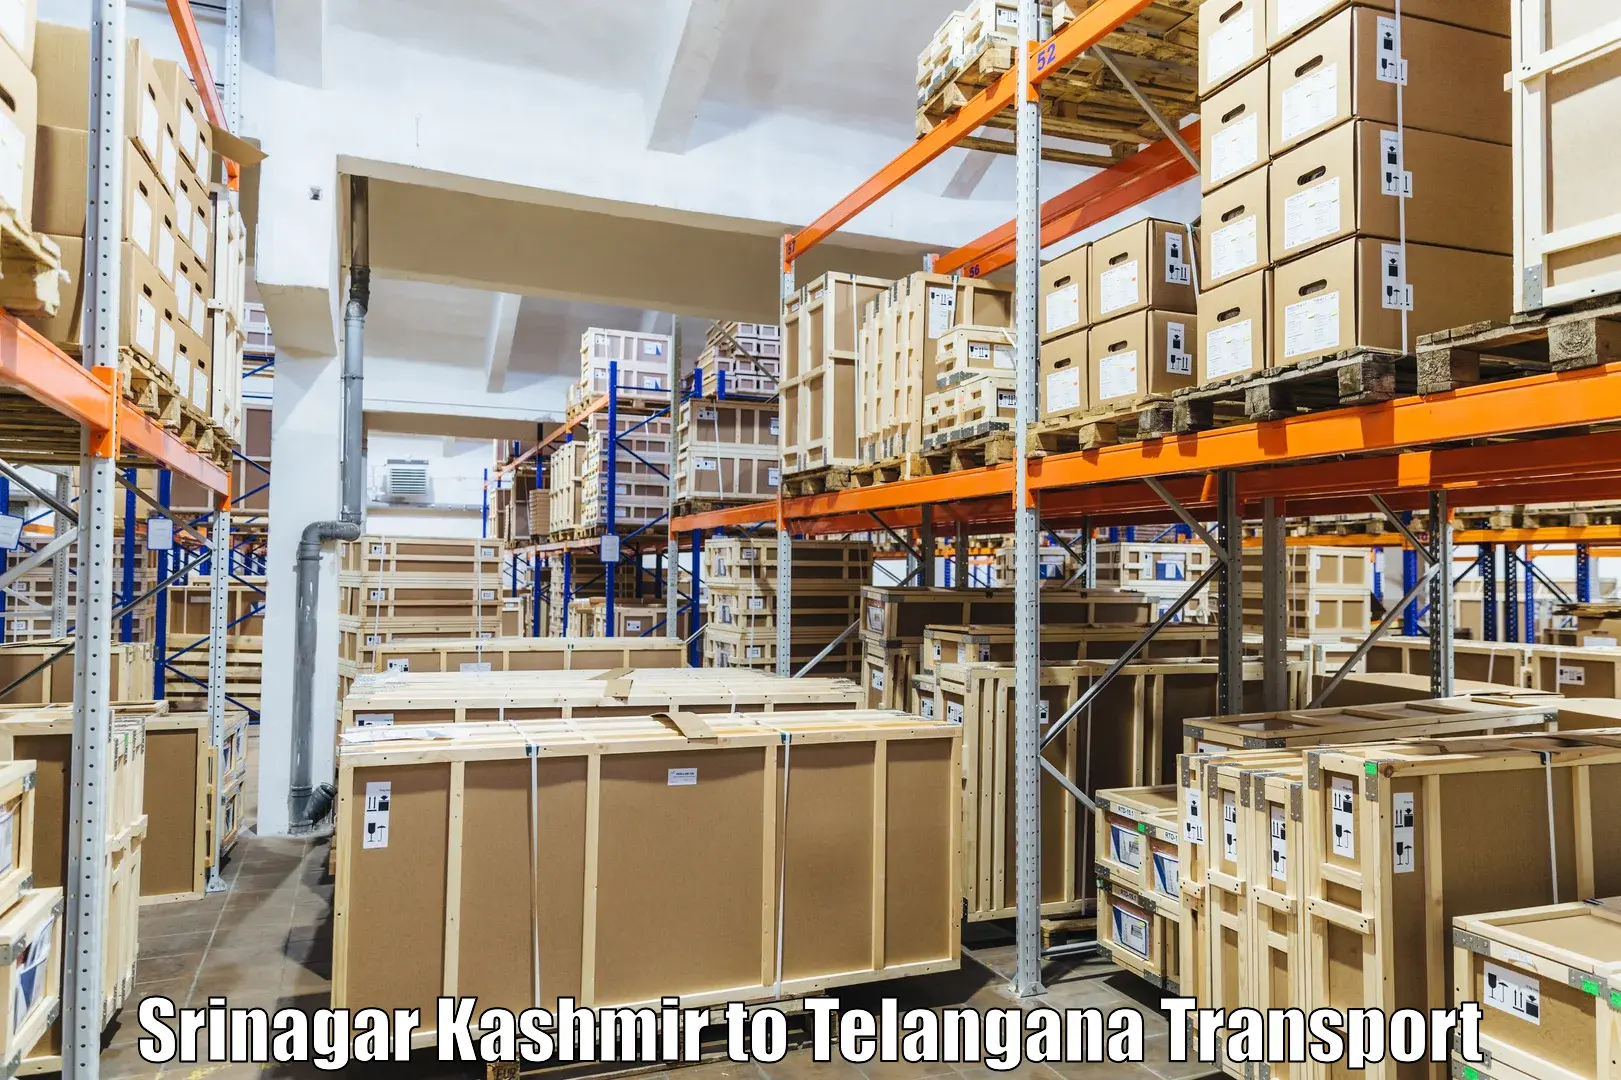 Vehicle parcel service Srinagar Kashmir to Gangadhara